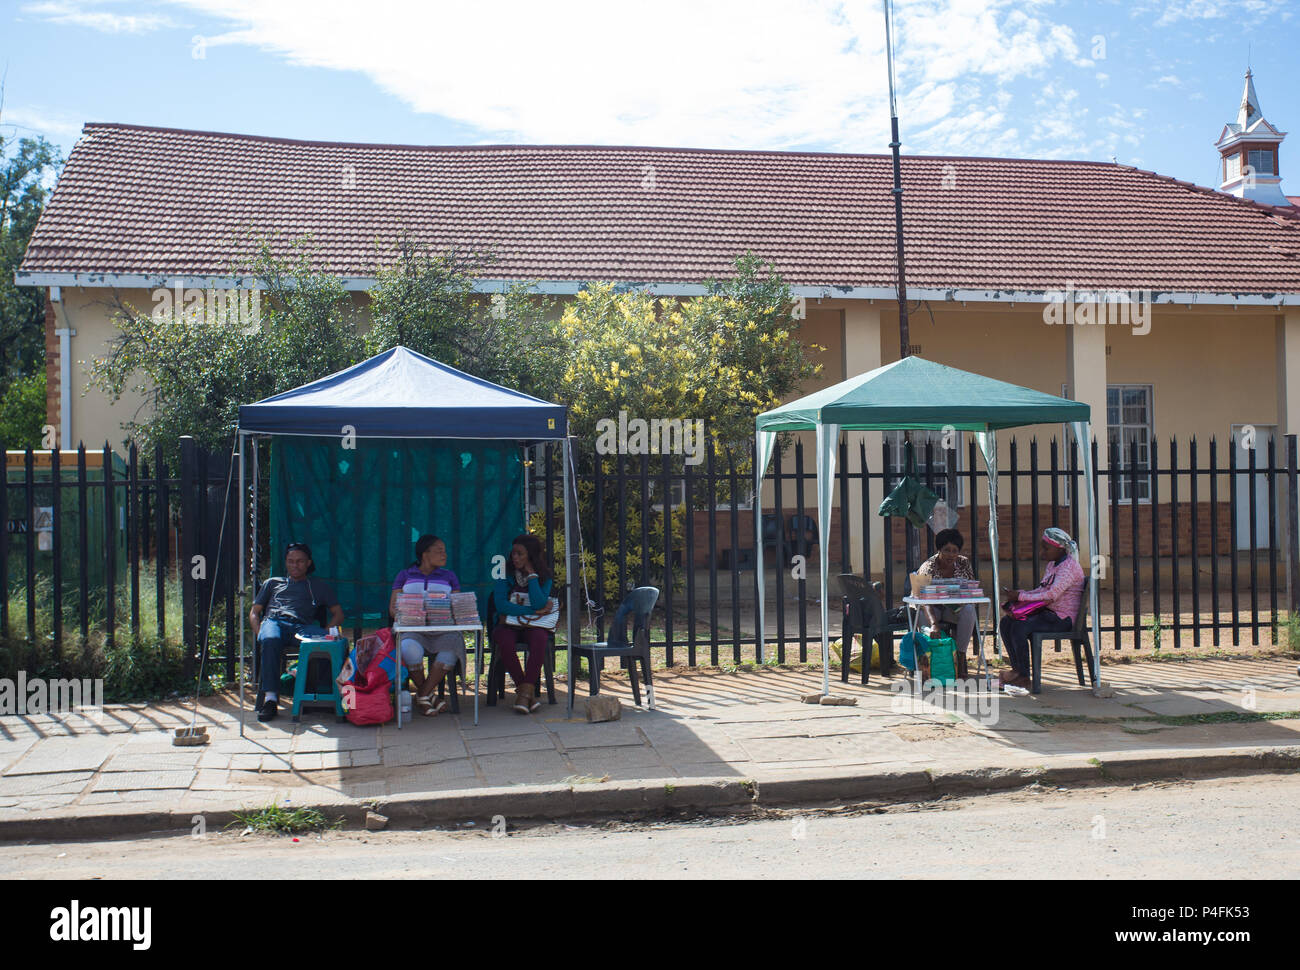 Afrikanische Stadt Szene von verschiedenen Straßenverkäufern auf dem Bürgersteig an Ständen verkaufen verschiedene Waren in Mahikeng, Südafrika Konzept Kleinunternehmen Stockfoto